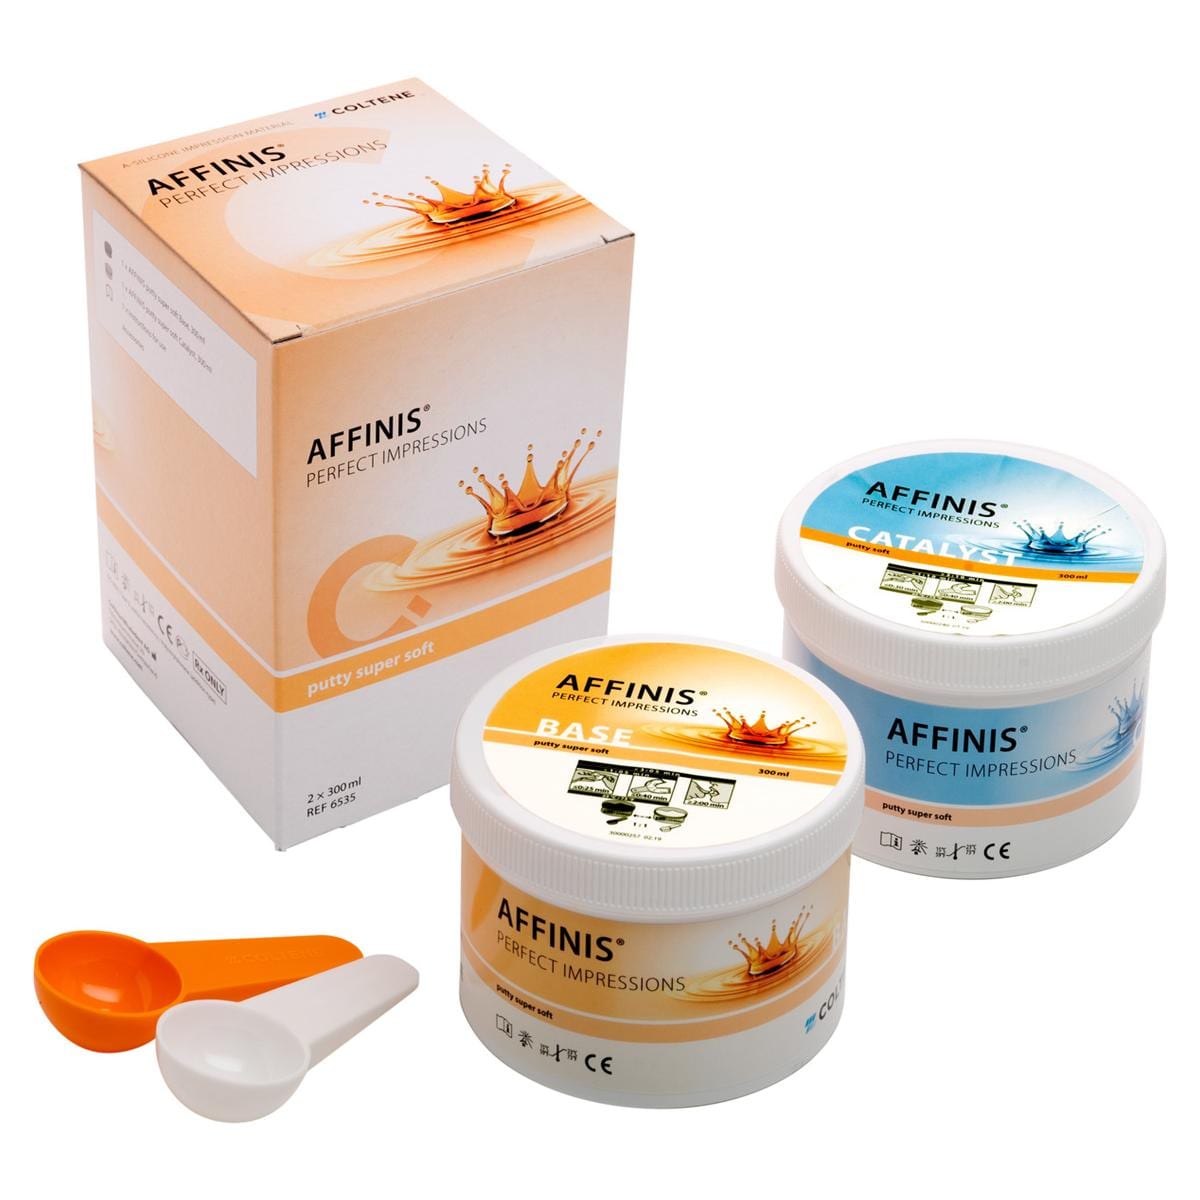 AFFINIS® putty super soft - Dosen 300 ml Basis und 300 ml Katalysator